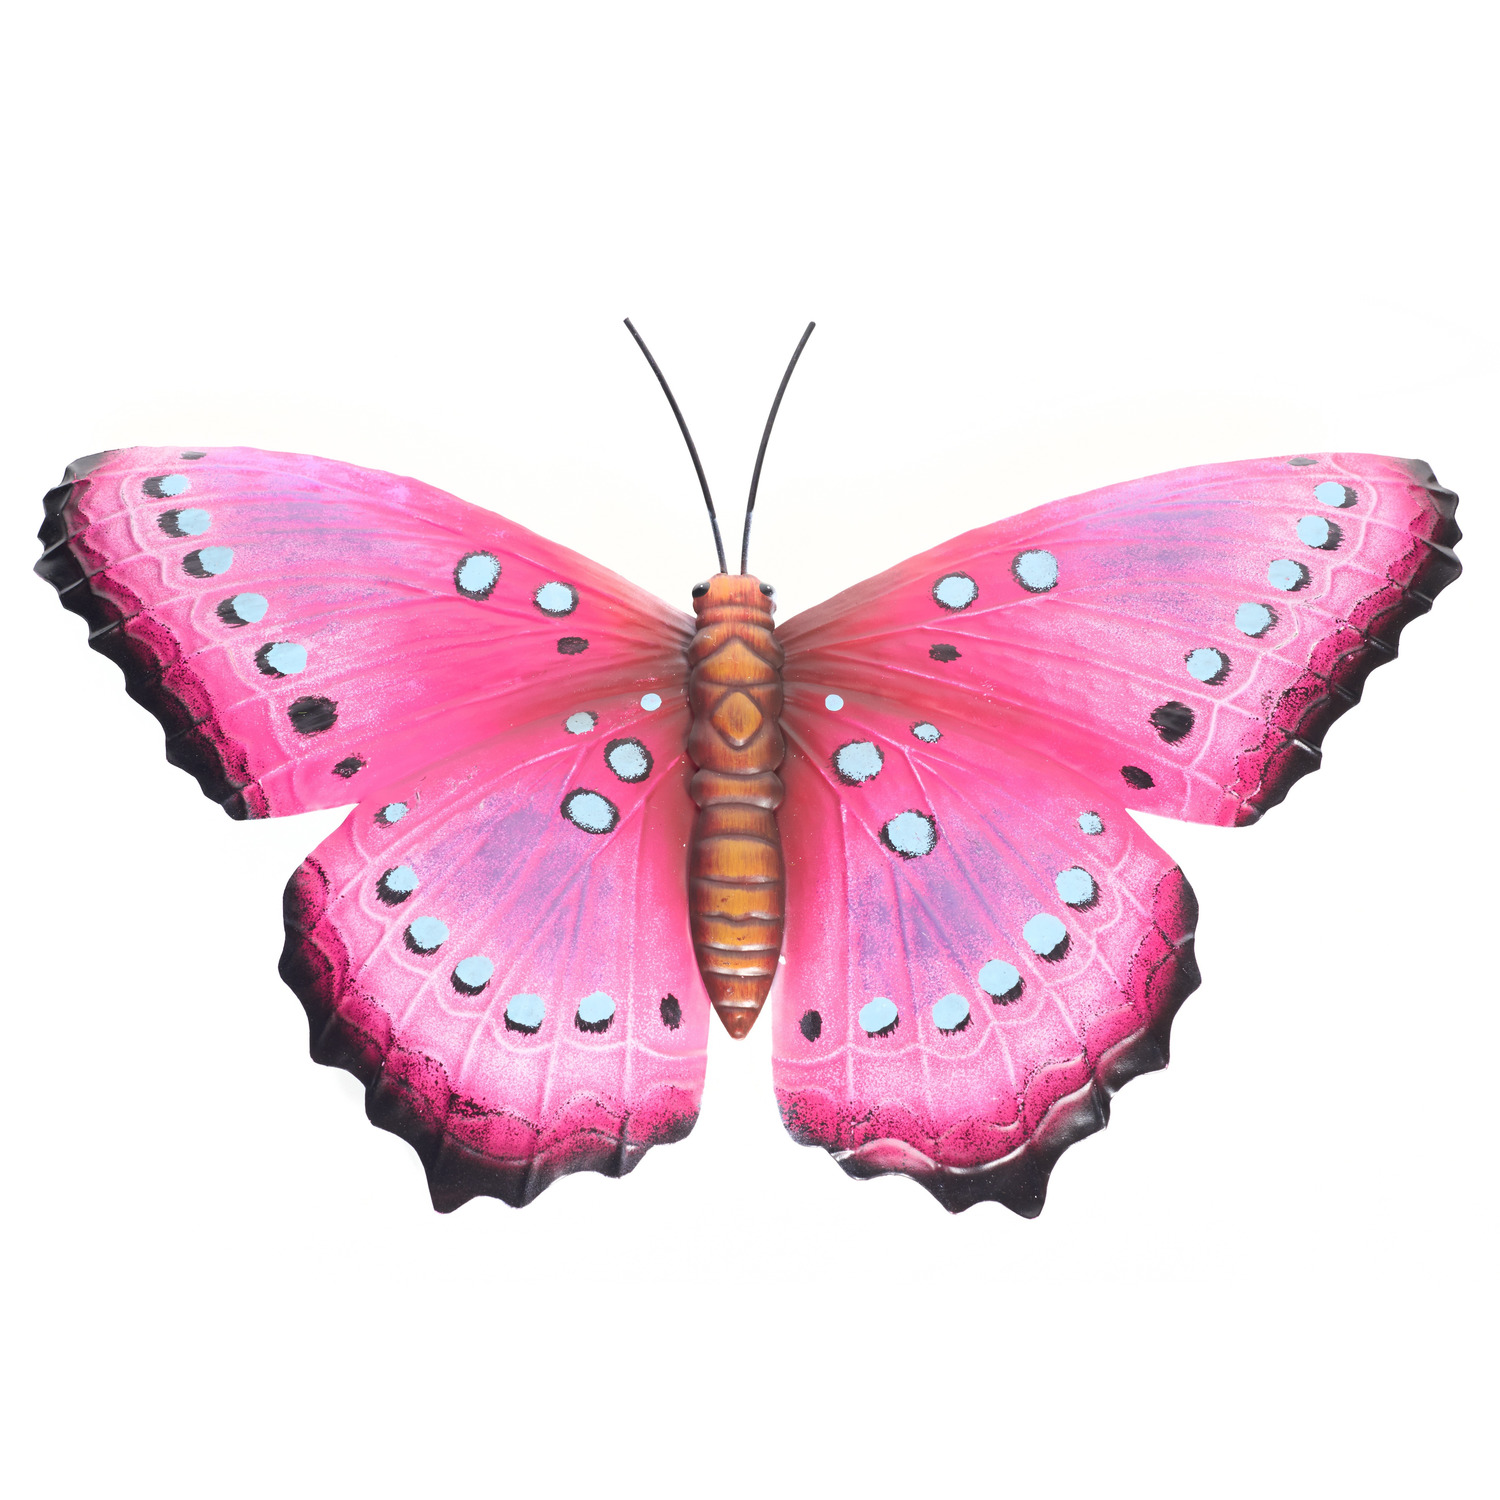 Schutting decoratie vlinders 48 cm roze-zwart metaal